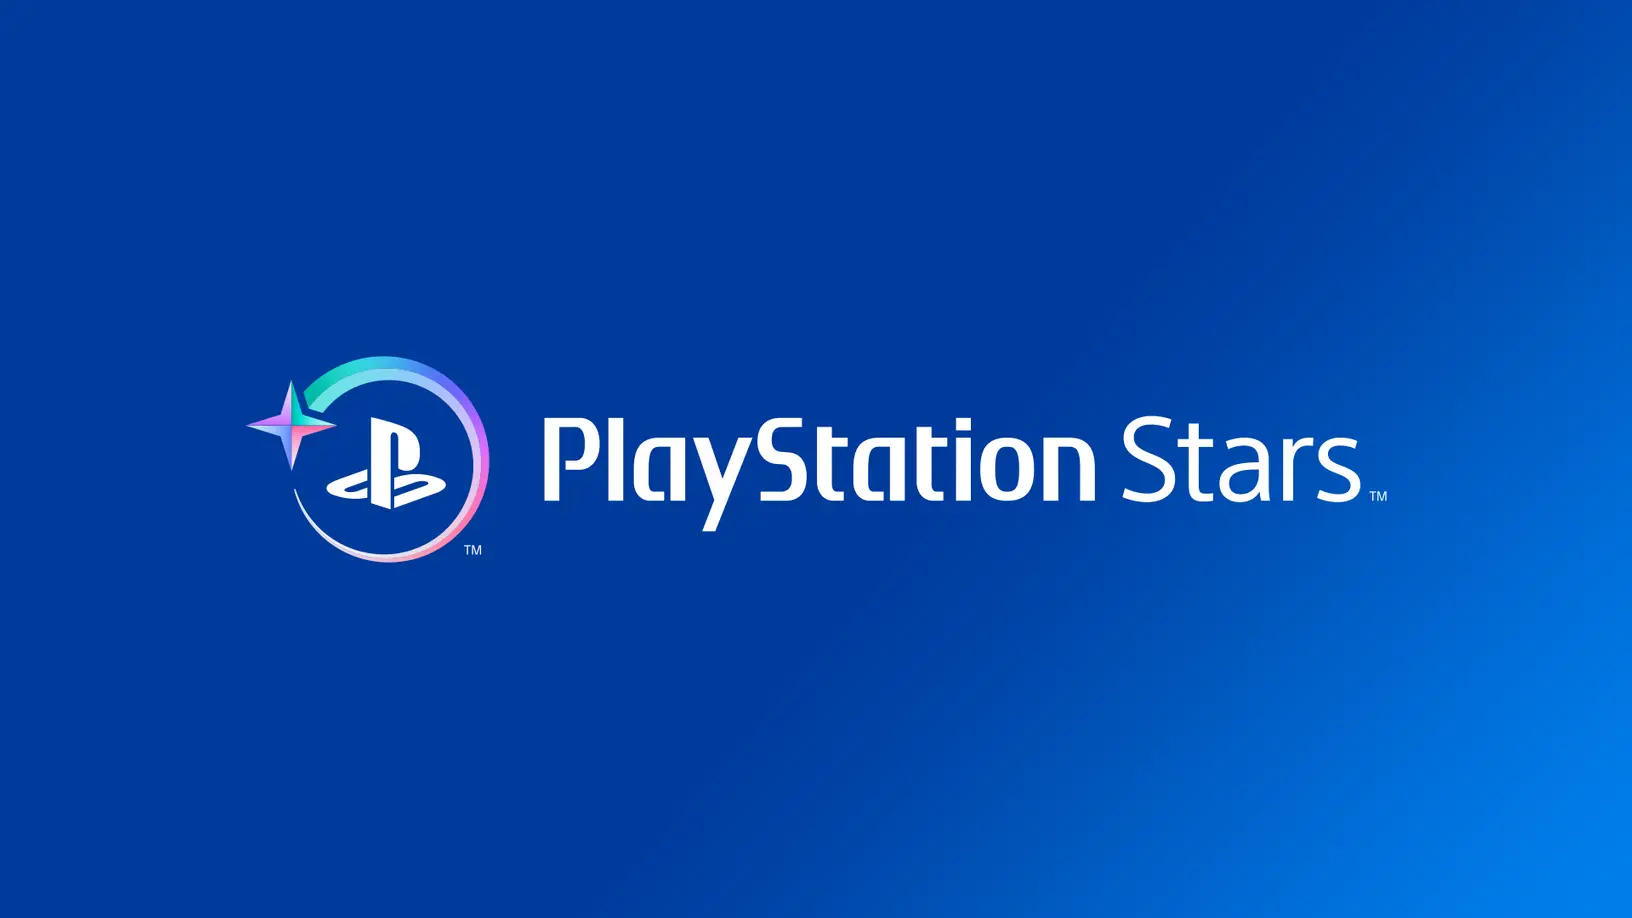 Программа бесплатных вознаграждений Sony PlayStation Stars запускается в сентябре этого года.